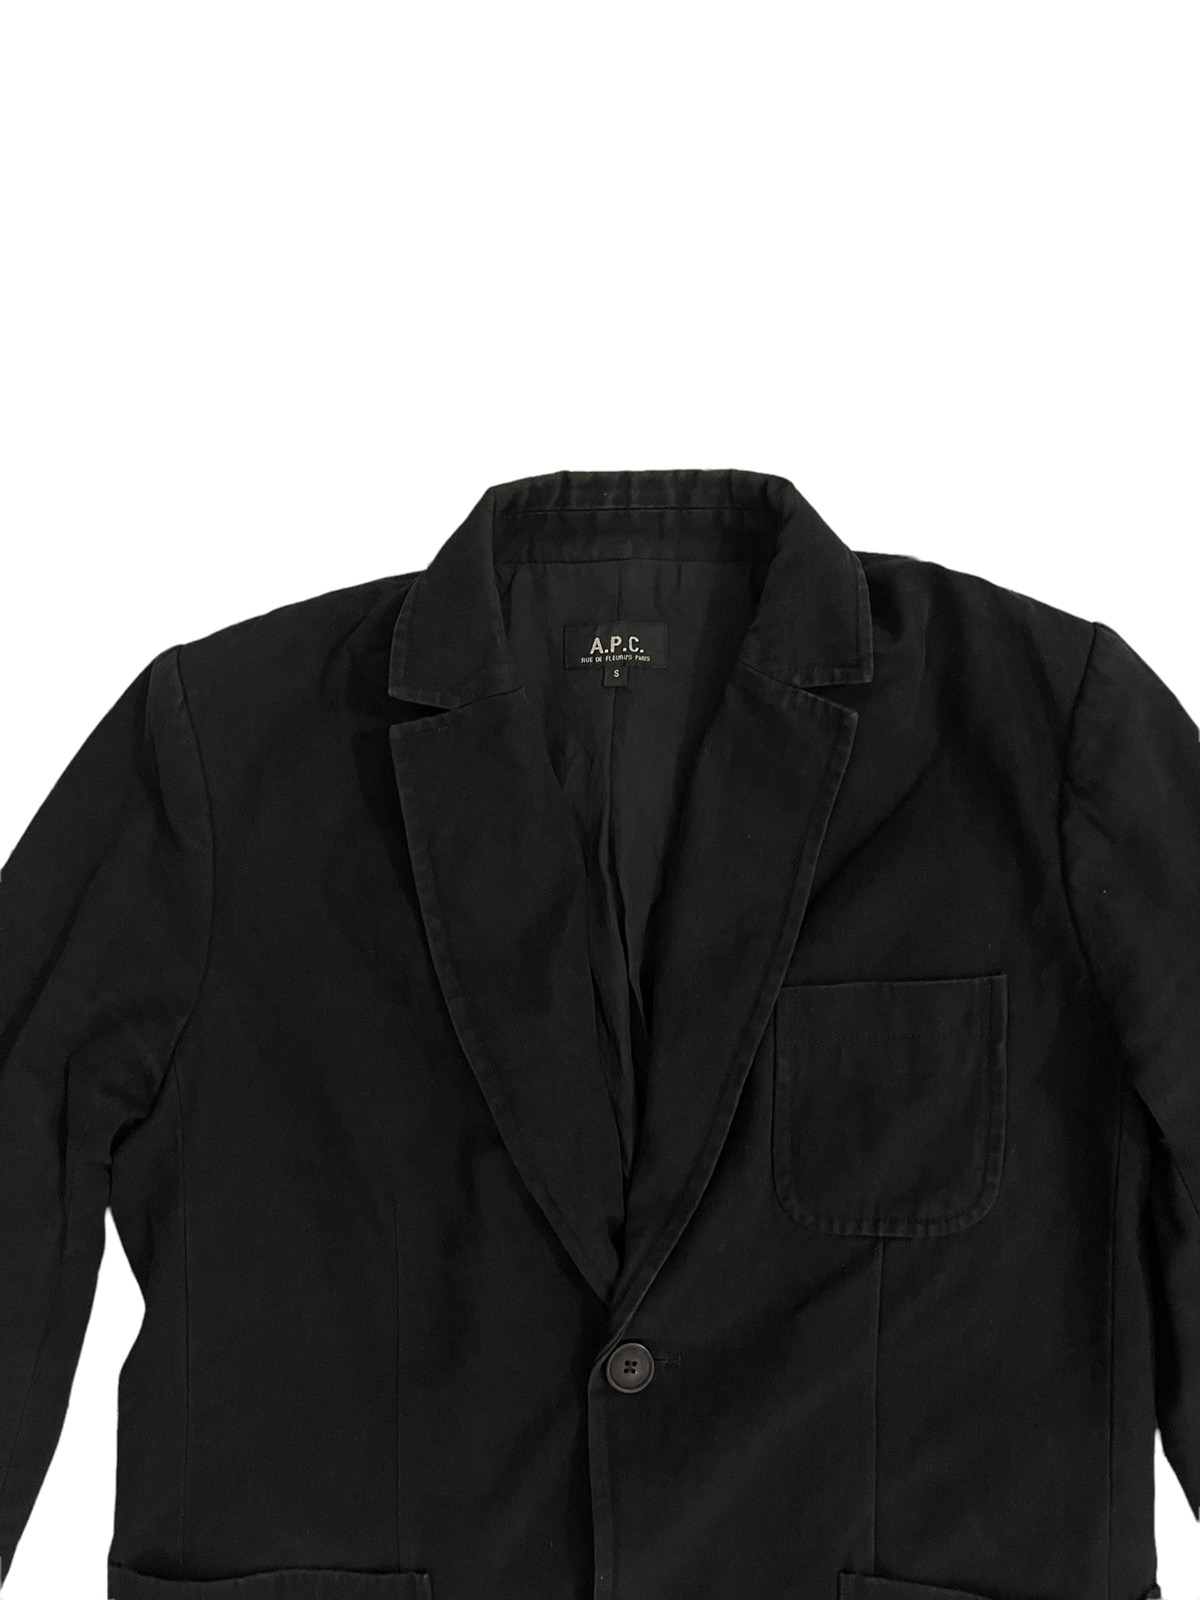 apc jacket - 6